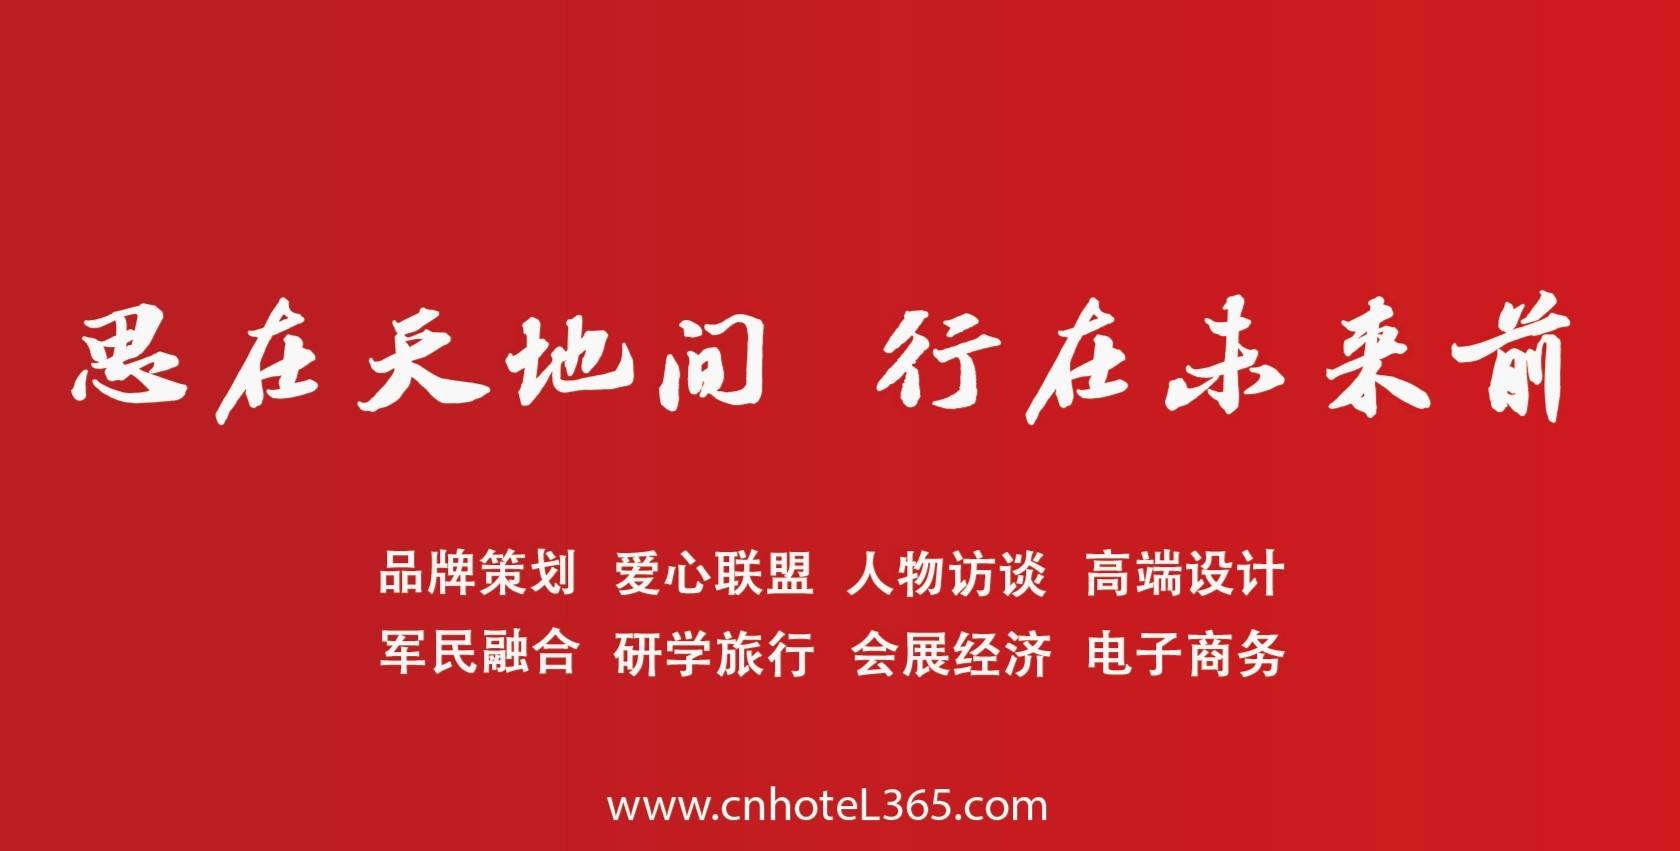 中国端午屈原美食文化旅游节将于6月10日至14日隆重举行